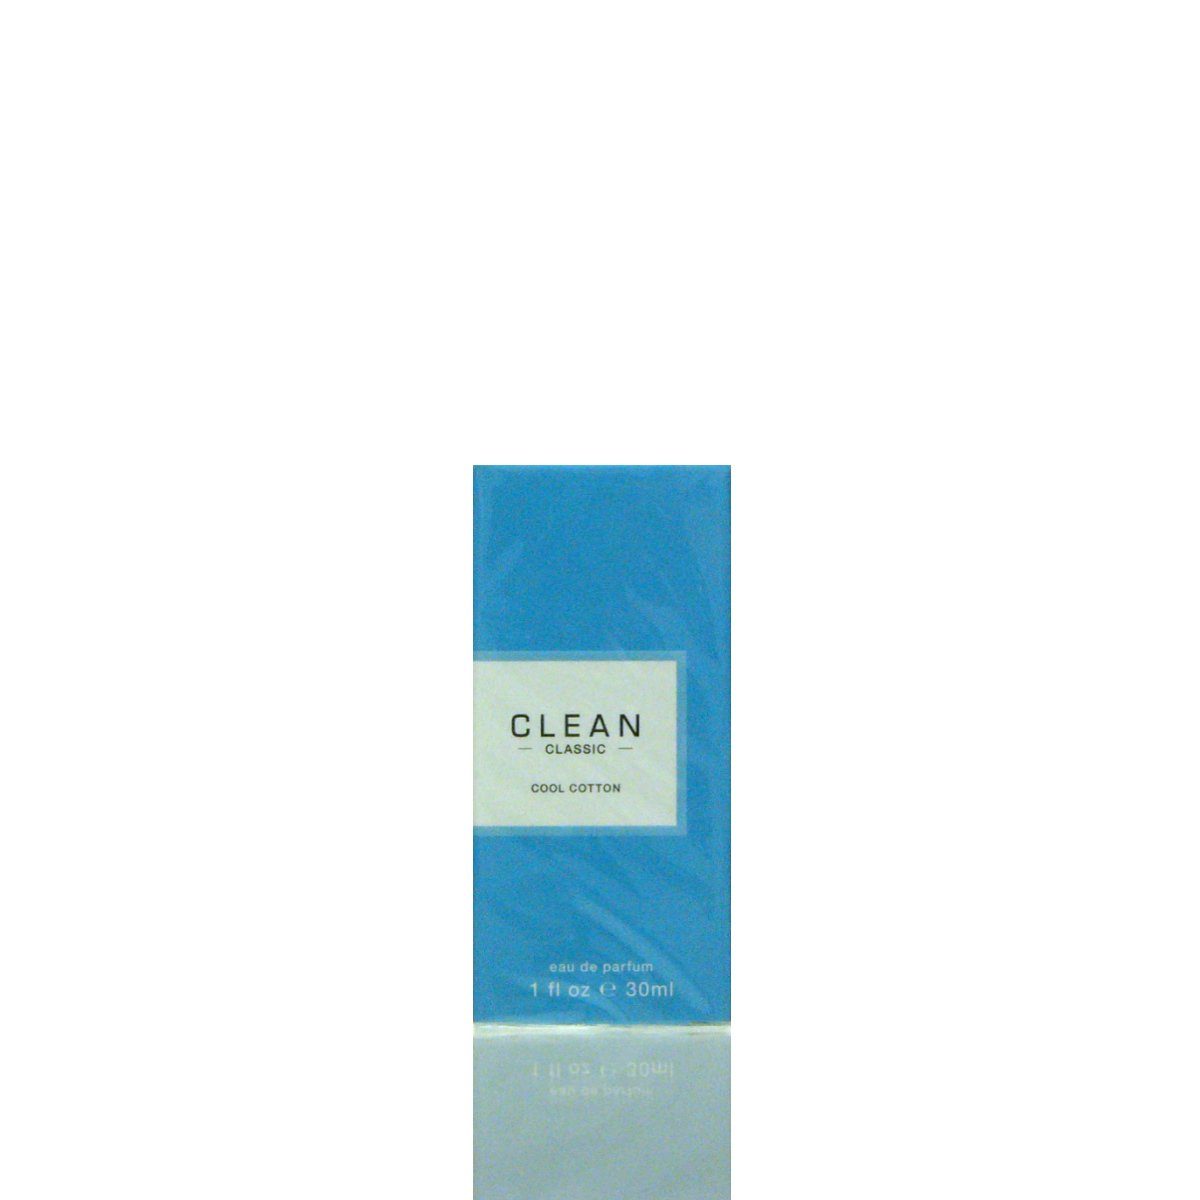 Parfum Cool de Eau 30 Cotton Clean ml Eau Parfum de CLEAN 2020